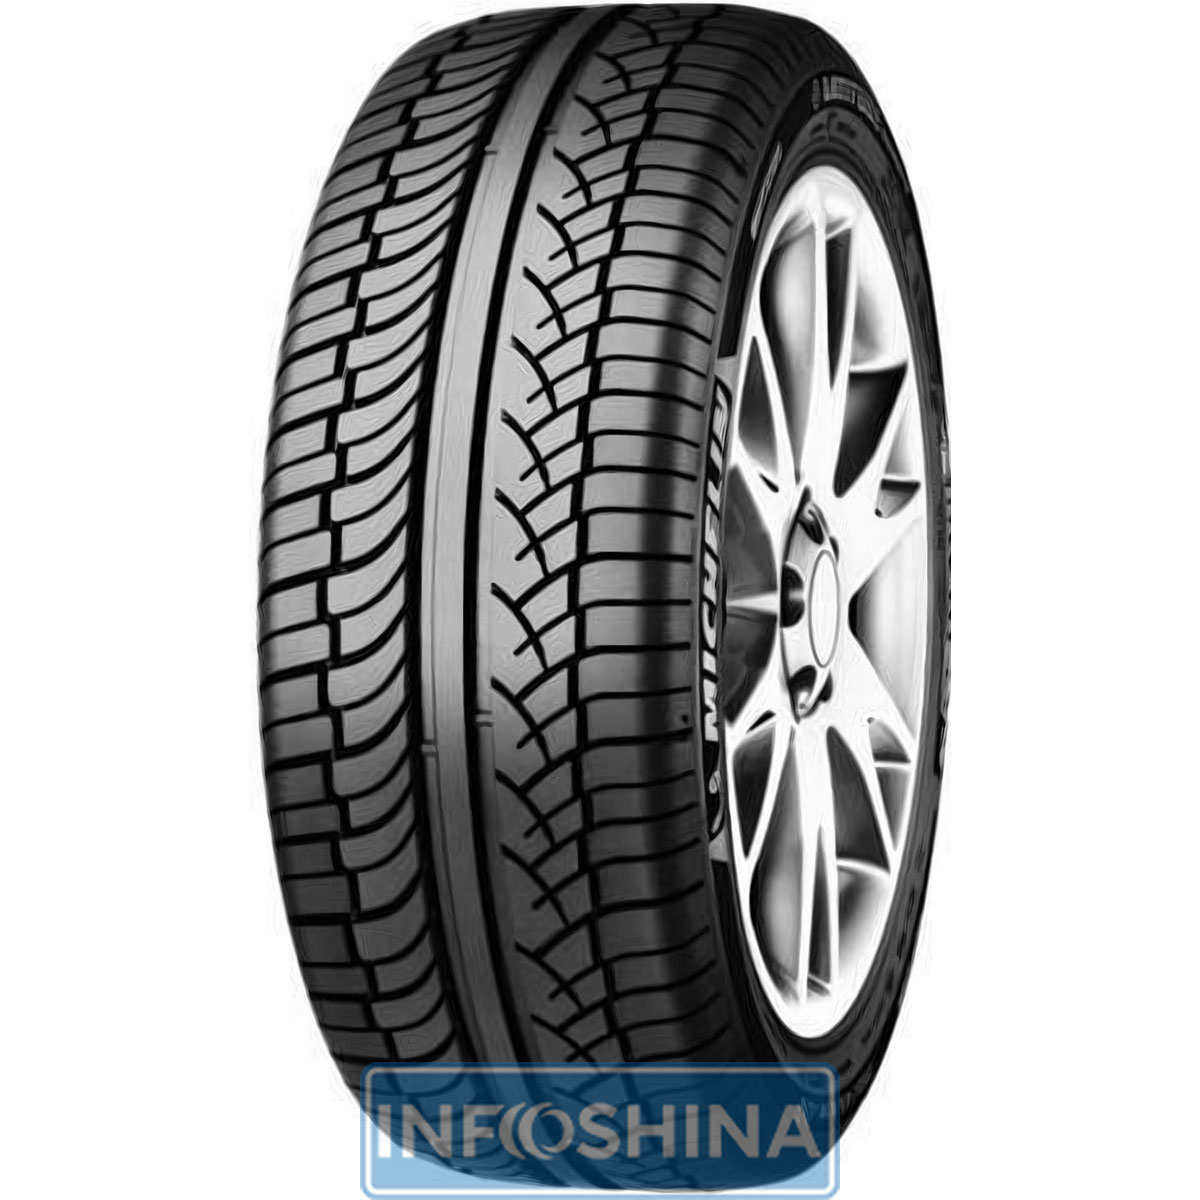 Купить шины Michelin Latitude Diamaris 255/50 R20 109Y